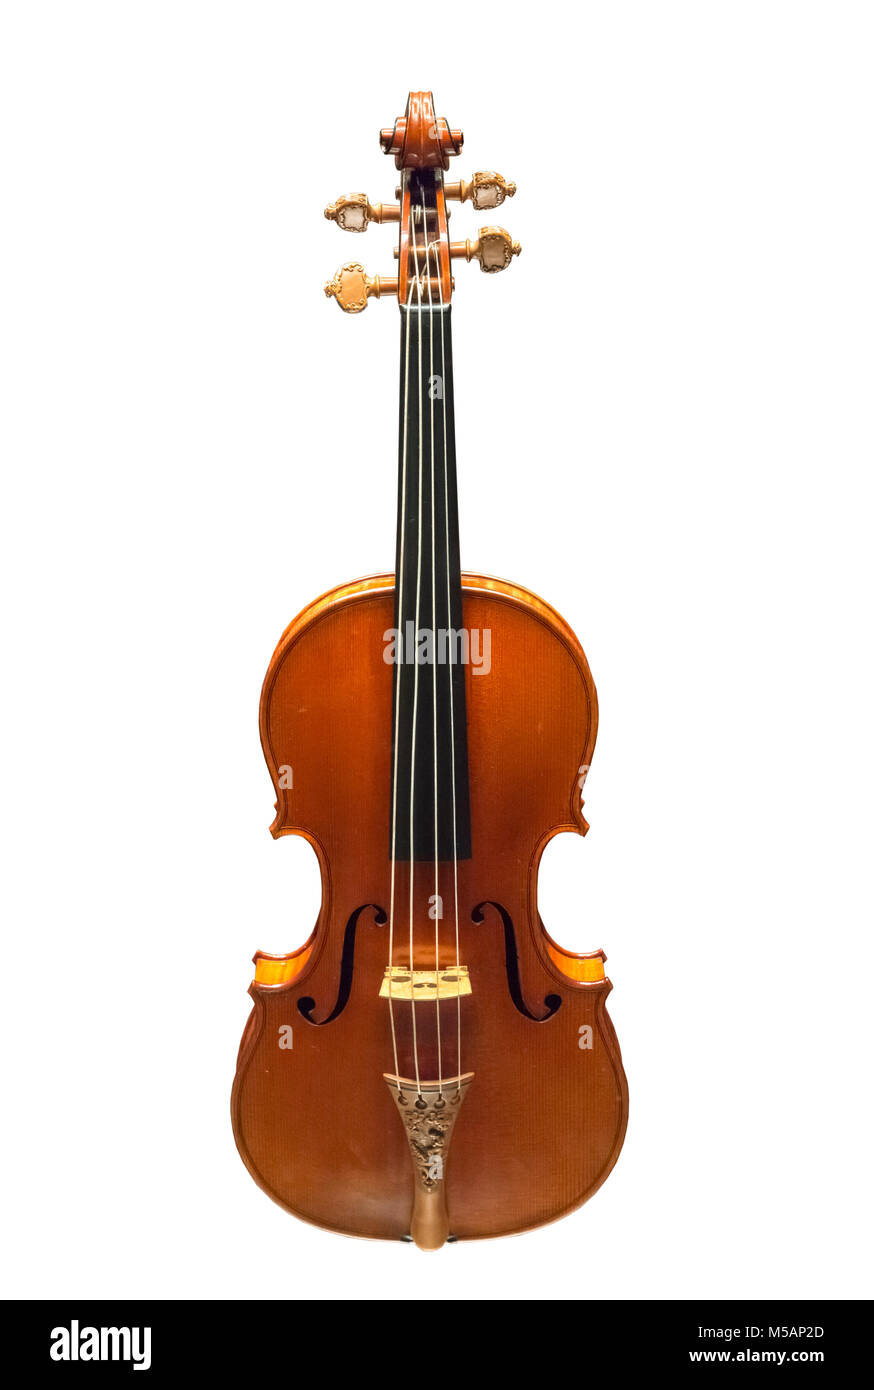 Violon Stradivarius. Le Messie violon d'Antonio Stradivari (1644-1737) en 1716, sur l'affichage à l'Ashmolean Museum, Oxford, England, UK Banque D'Images